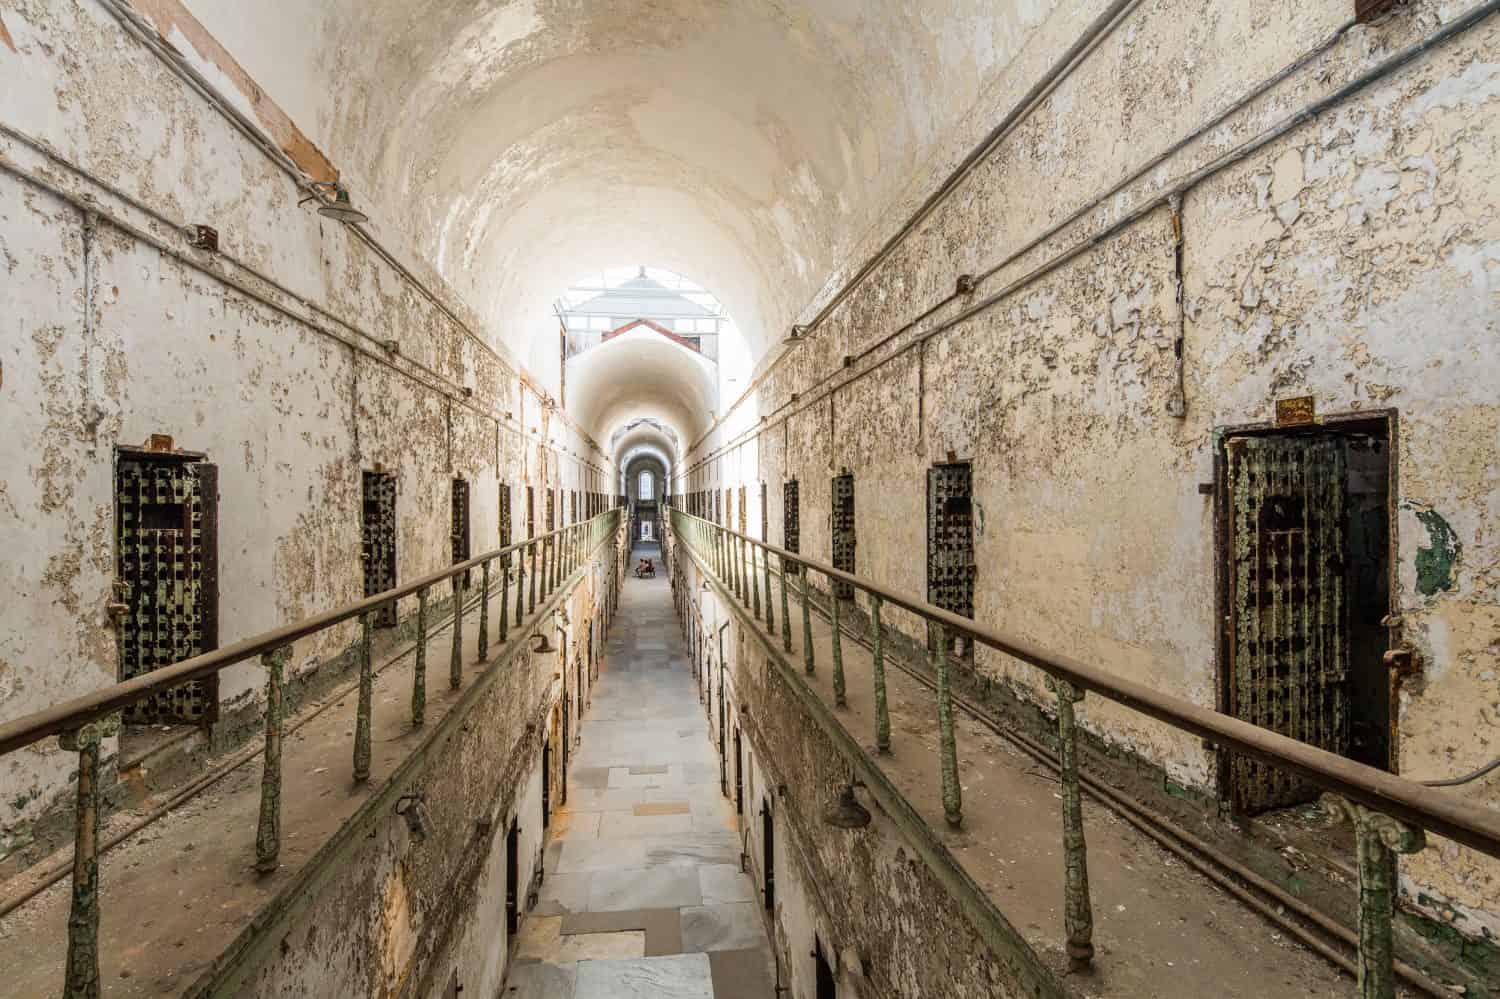   Penitenziario dello Stato Orientale.  Philadelphia, Pennsylvania